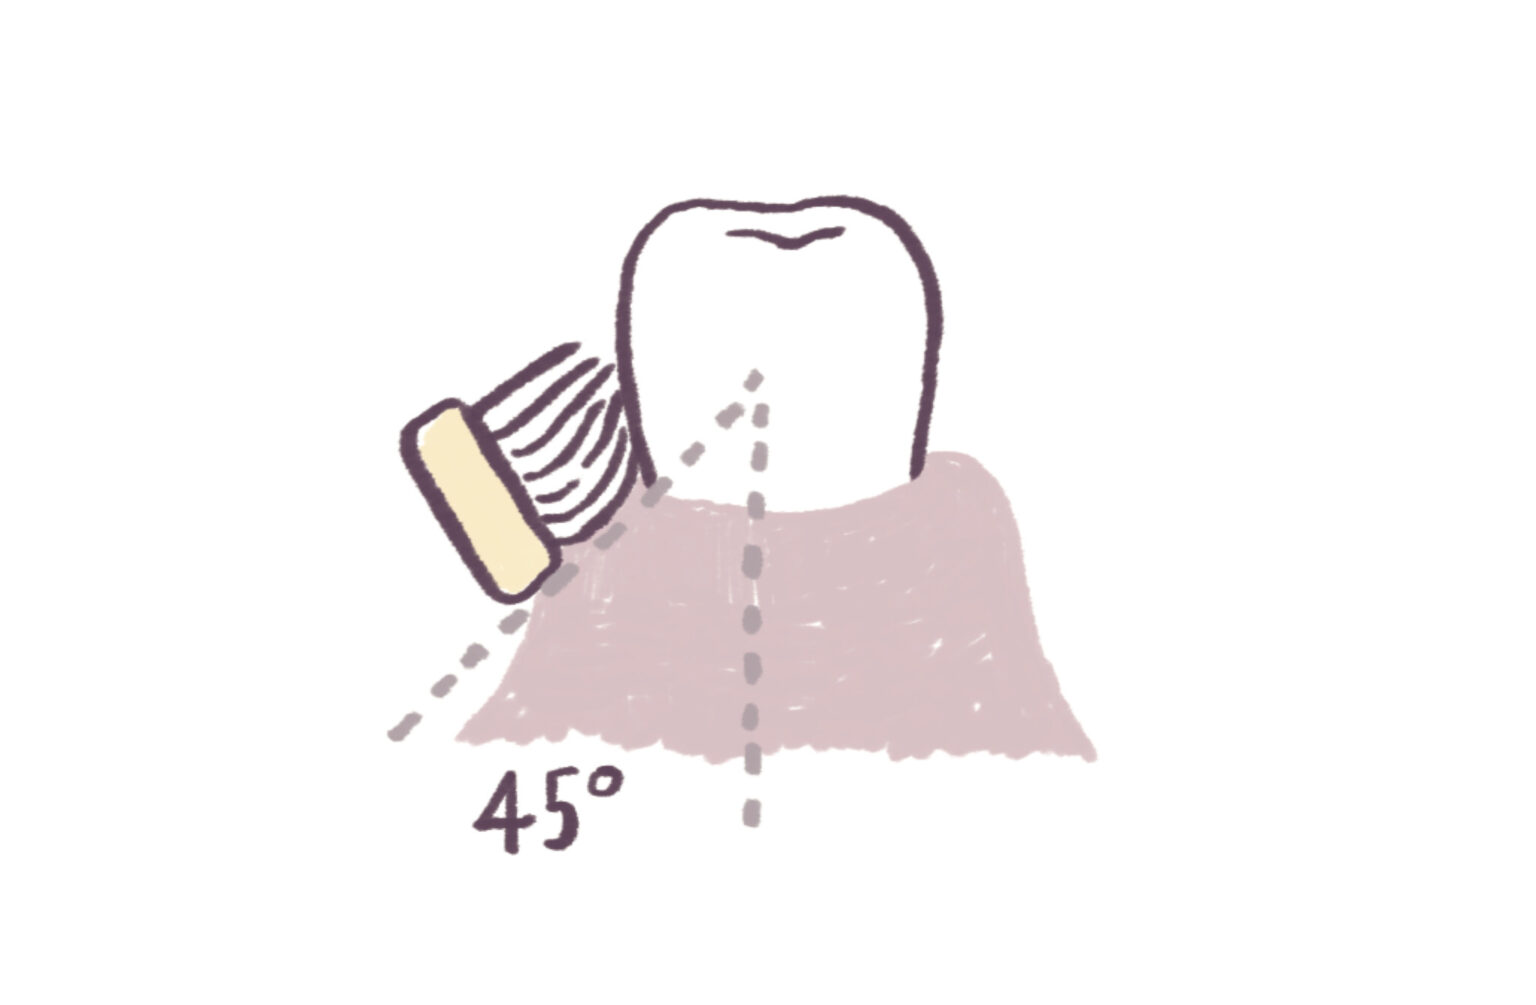 4.歯茎マッサージ「チャーターズ法」。上向きの約45度で歯に当てて回転させるように磨く。歯茎のマッサージ効果があるほか、歯ブラシの毛先が歯間に入りやすく、汚れをかき出すことができる。